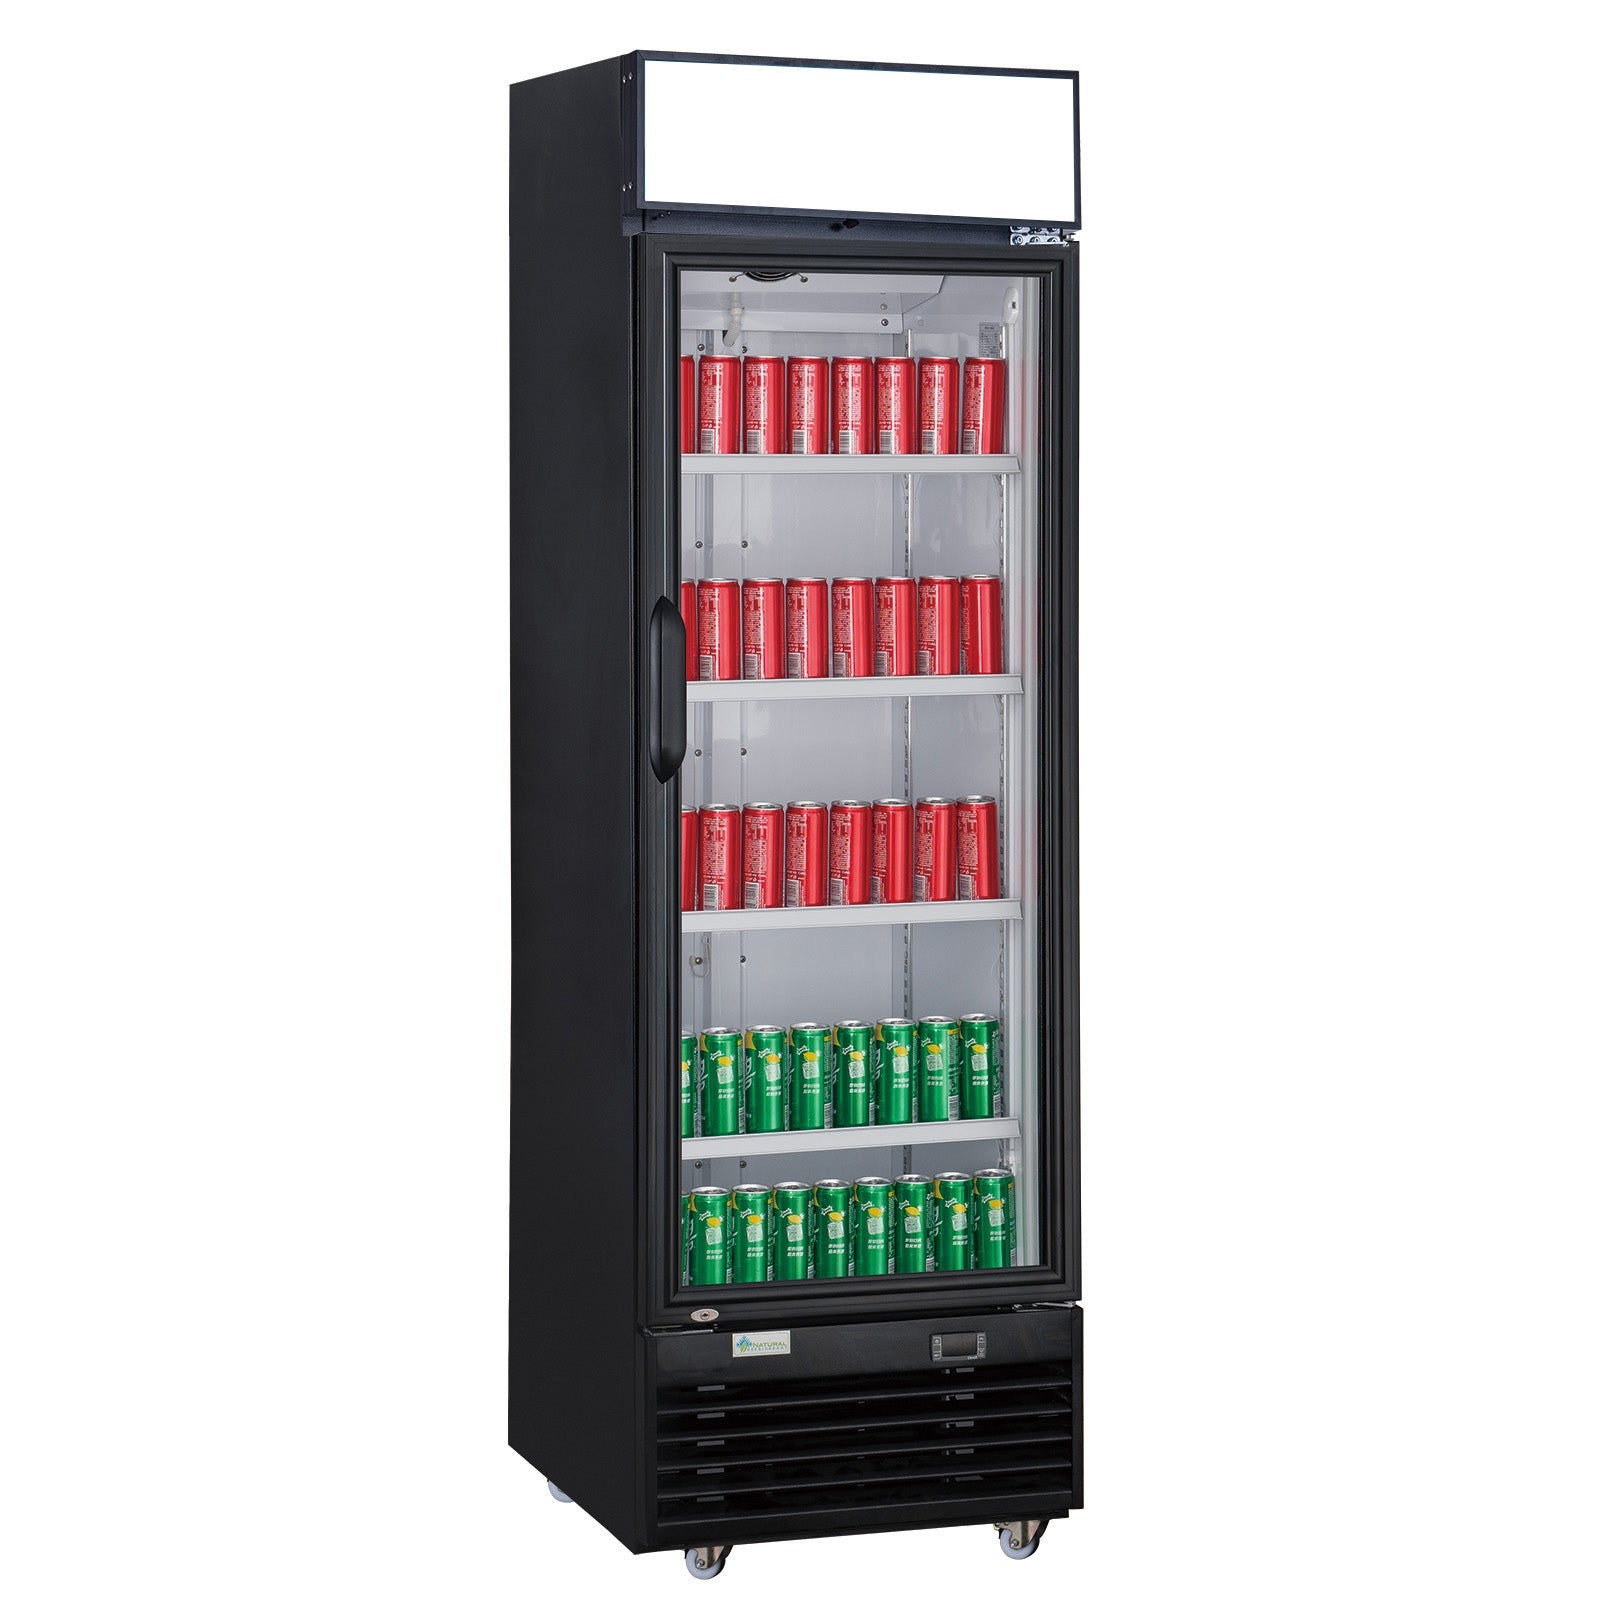 ChefAAA - TSM-12R Commercial Single Glass Swing Door Merchandiser Refrigerator